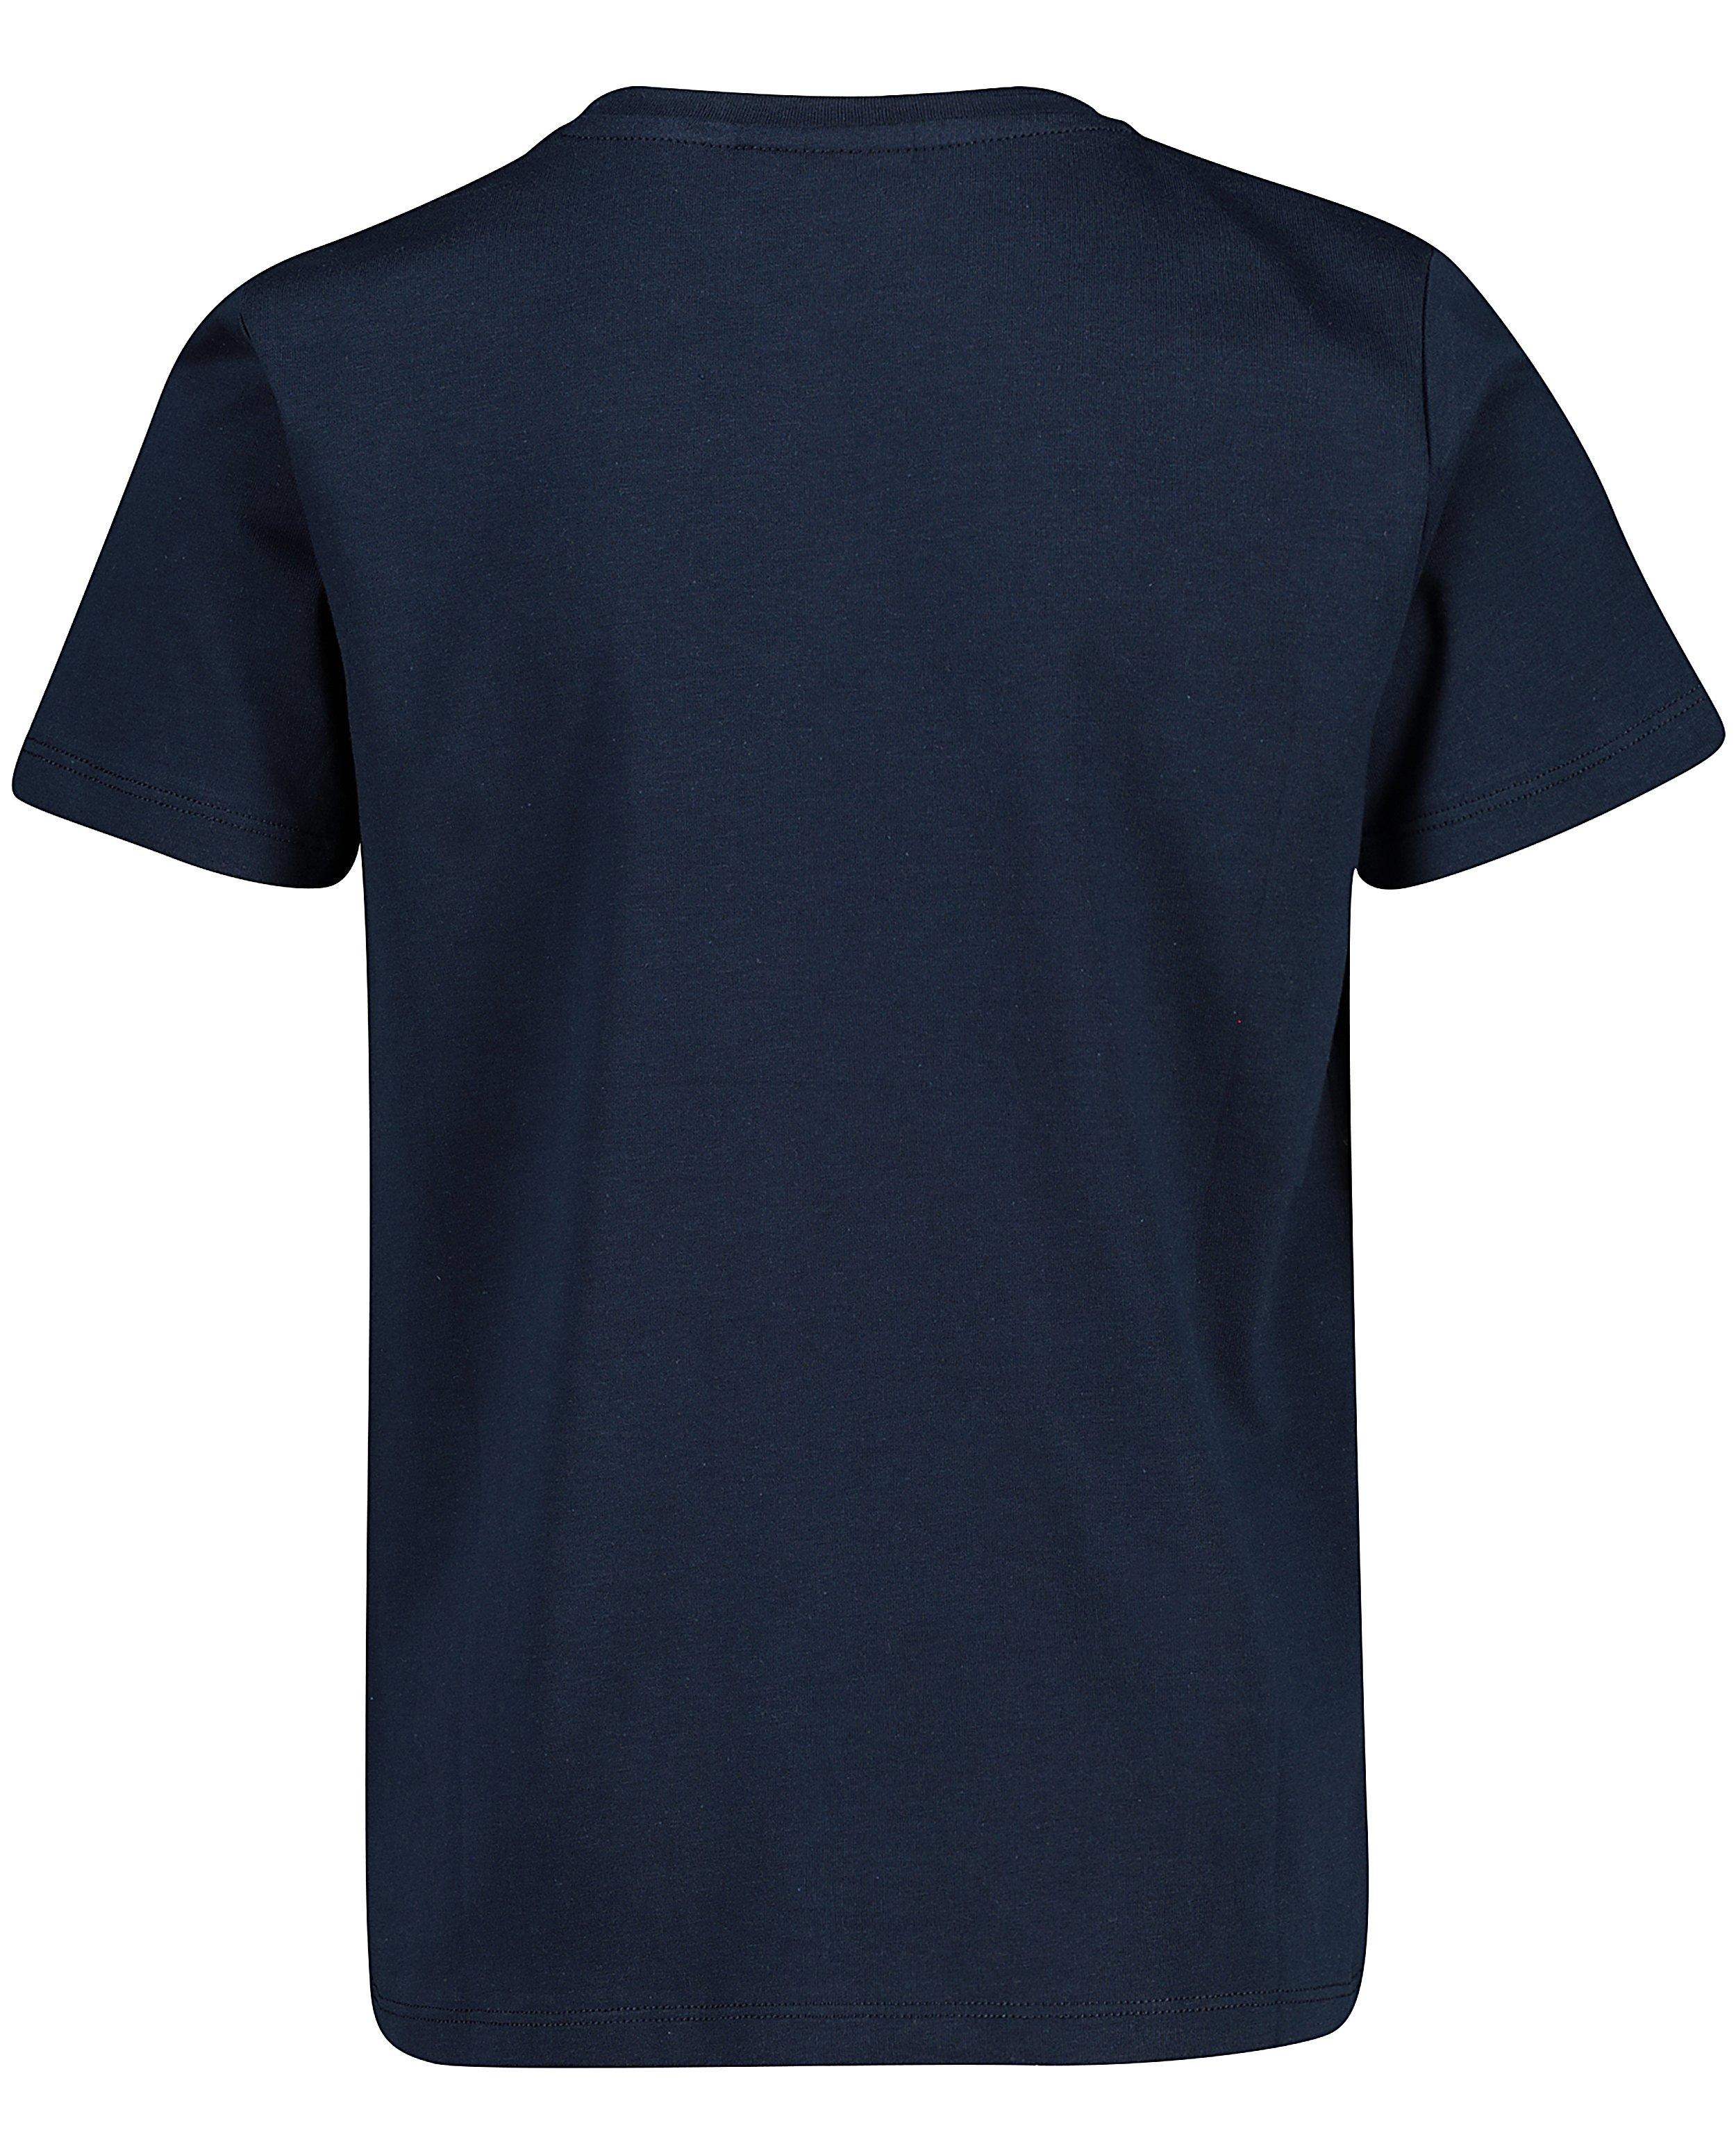 T-shirts - T-shirt bleu foncé #LikeMe